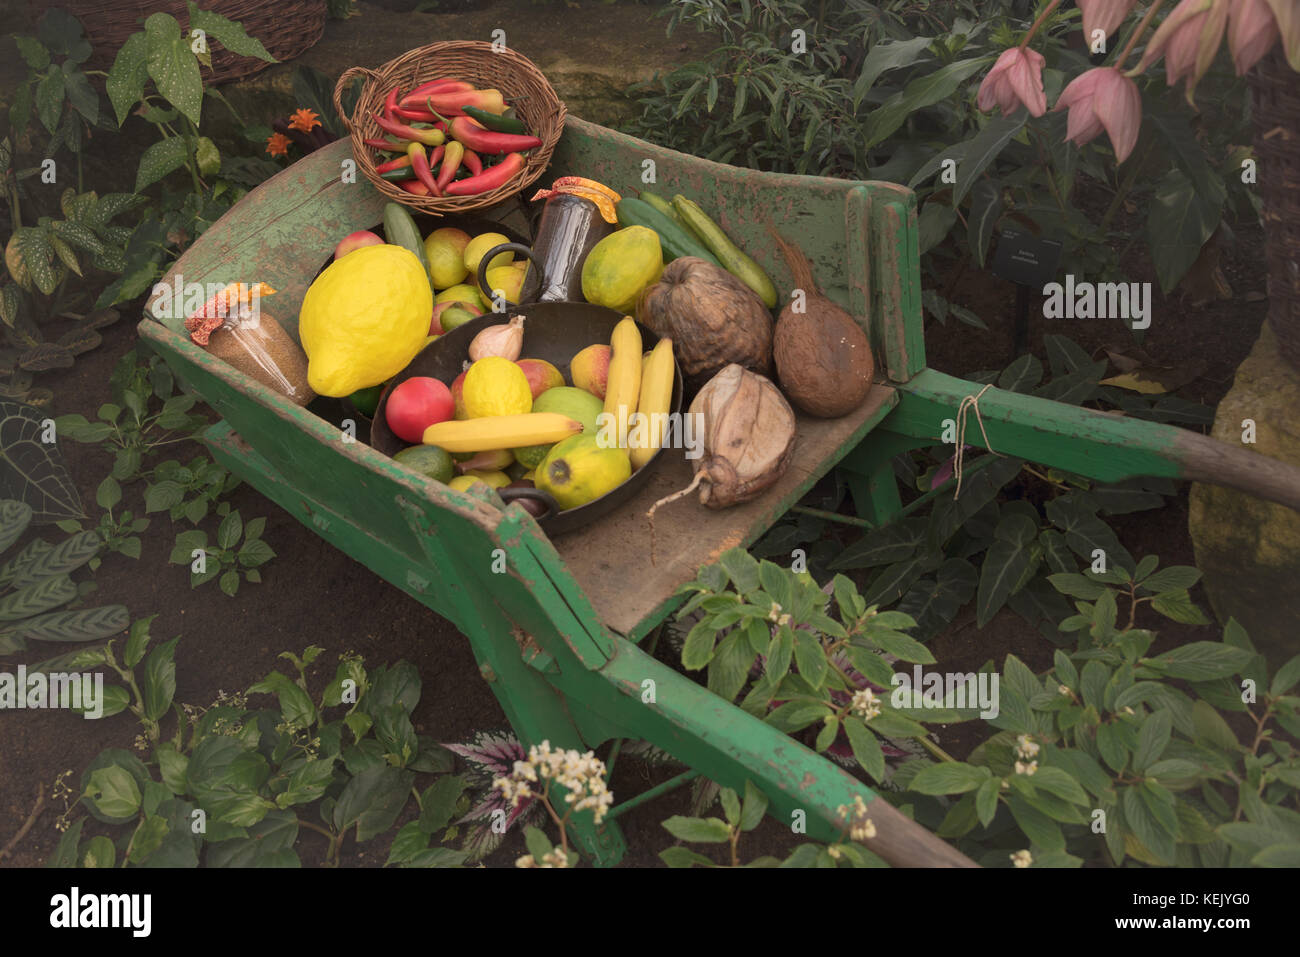 El jardín verde carro de madera con frutas y verduras en los jardines botánicos de Kew Foto de stock